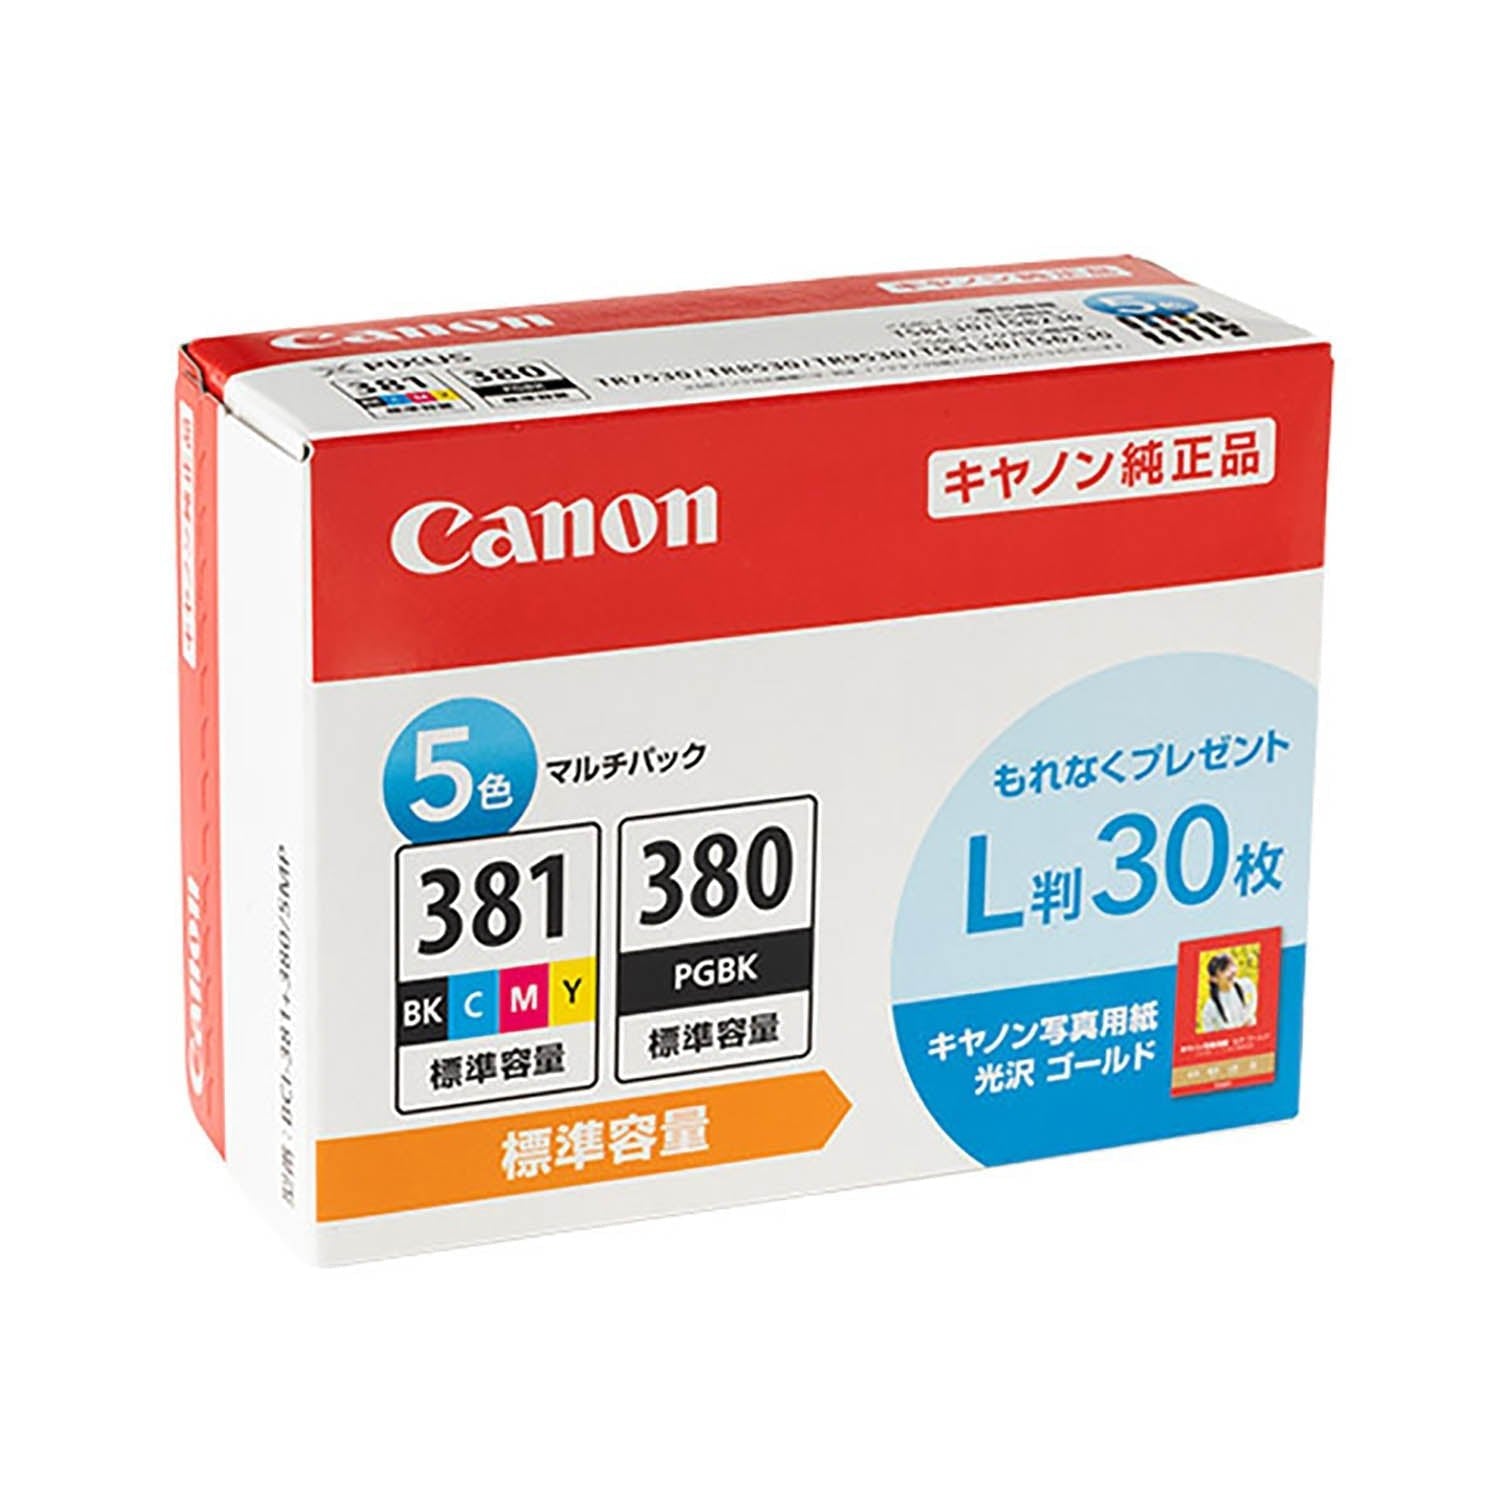 キヤノン用 BCI-381+380/5MP 純正インク 5色セット